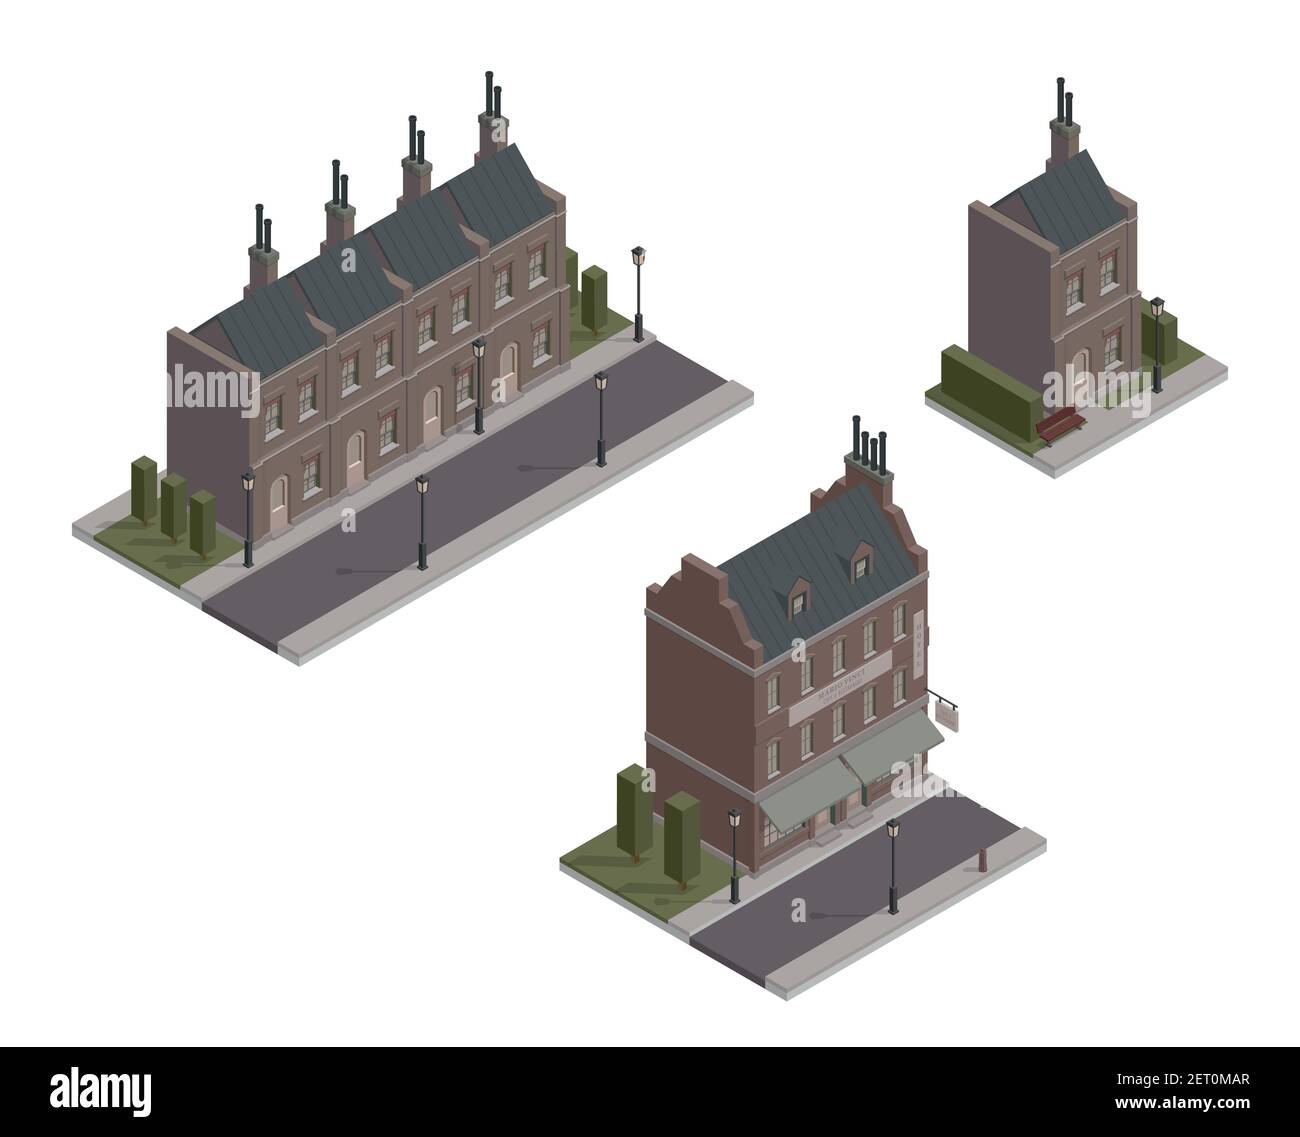 Insieme di case gotiche isometriche vettoriali. Illustrazione vettoriale del blocco vivente d'epoca. Edifici delle fate di Londra. Vittoriano, cupo, scuro e vecchio stile. CIT Illustrazione Vettoriale